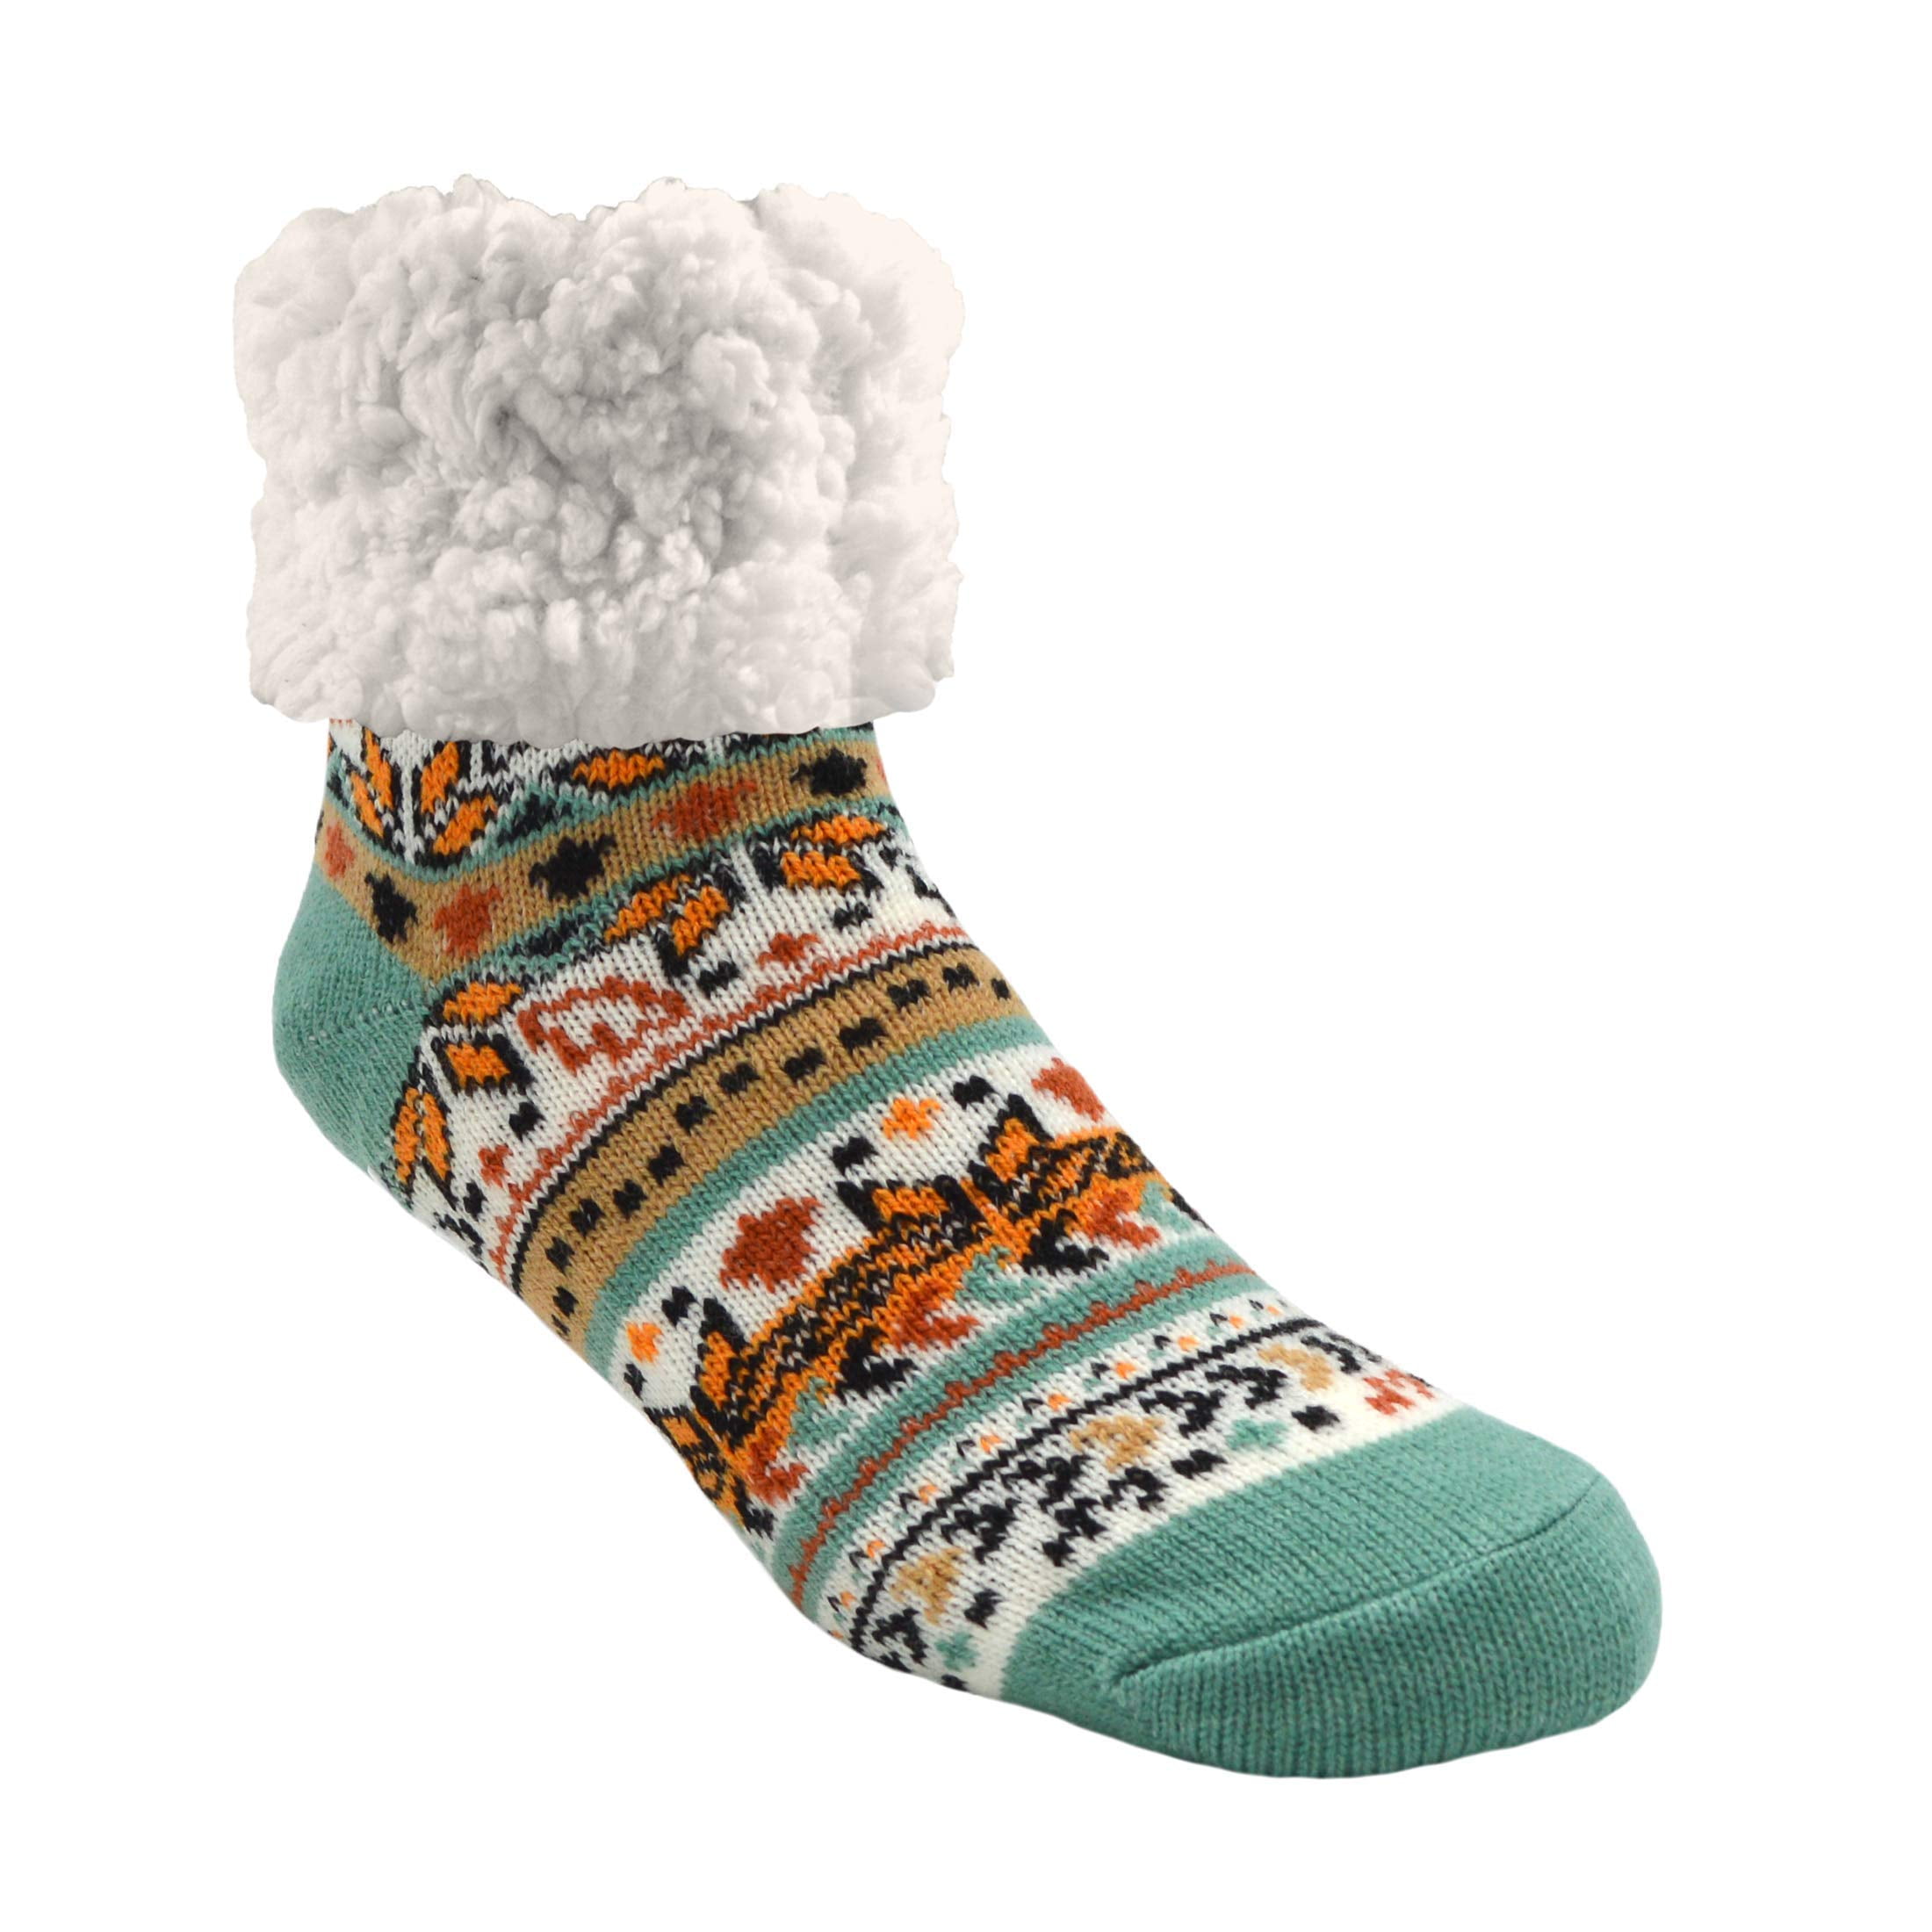 B Mens Autumn Winter Indoor Non-skid Floor Socks Slipper Socks 1 Pair